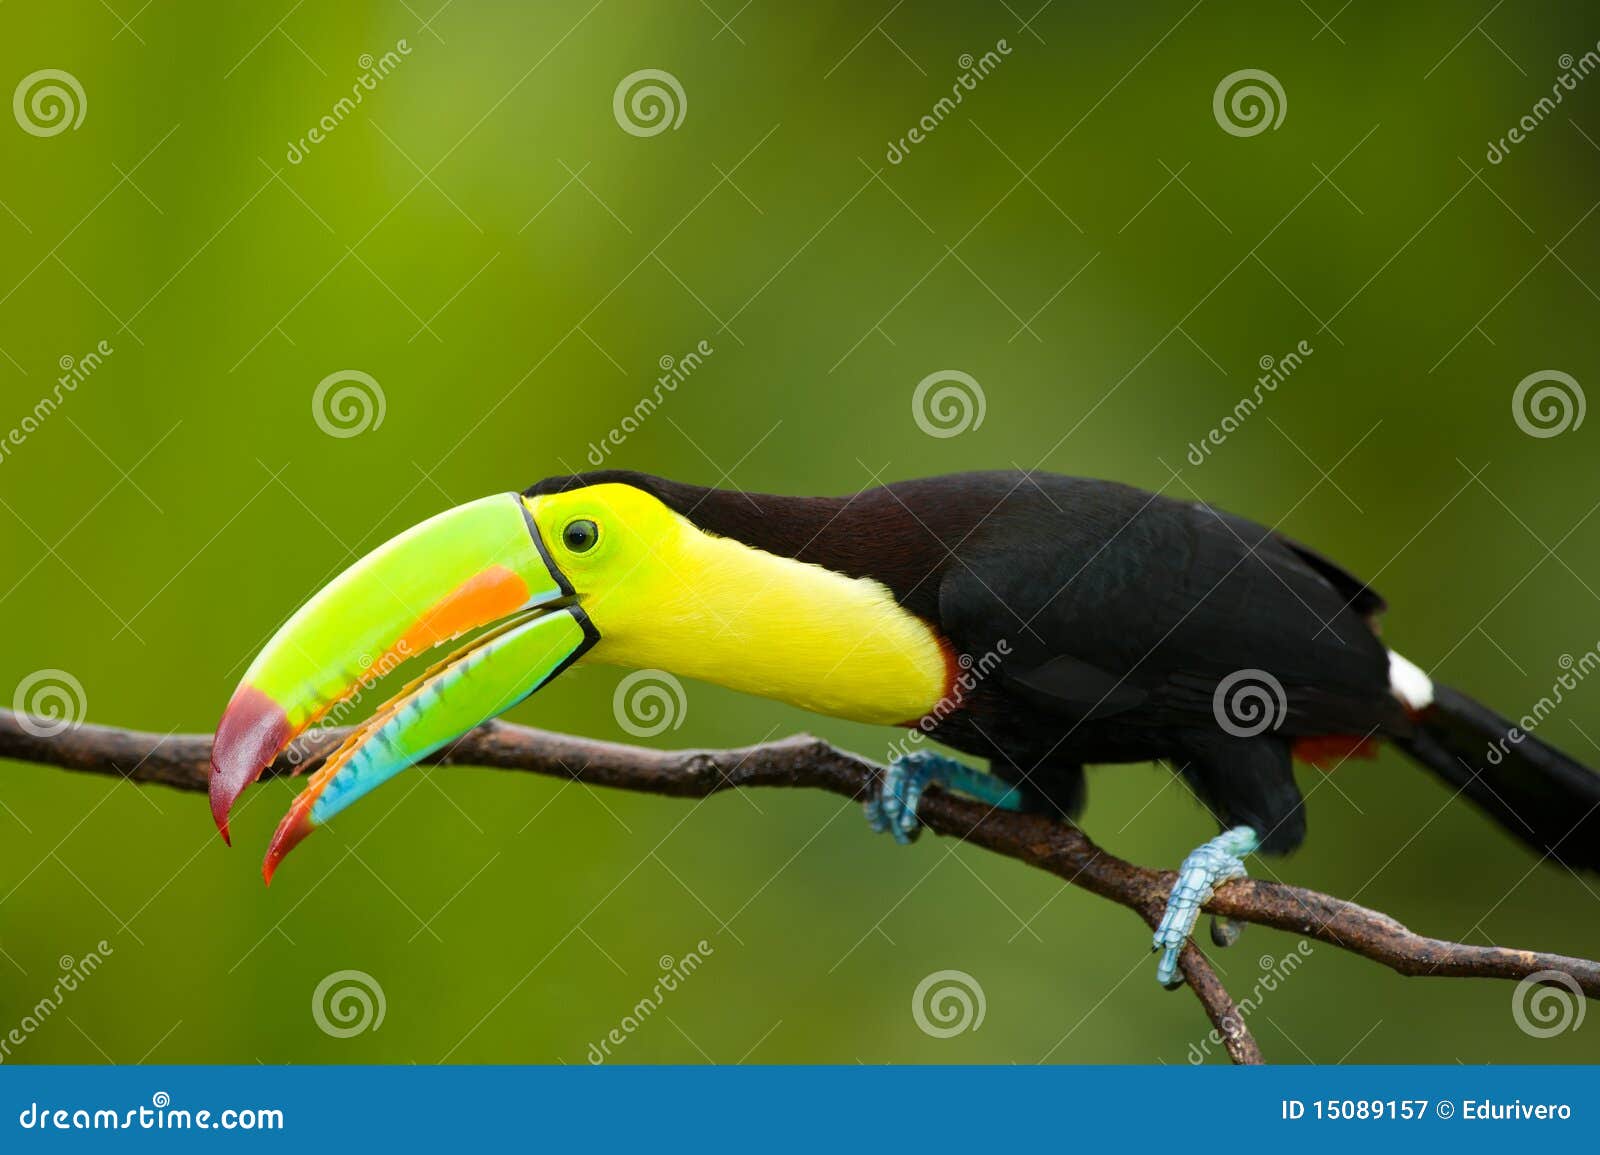 keel billed toucan.